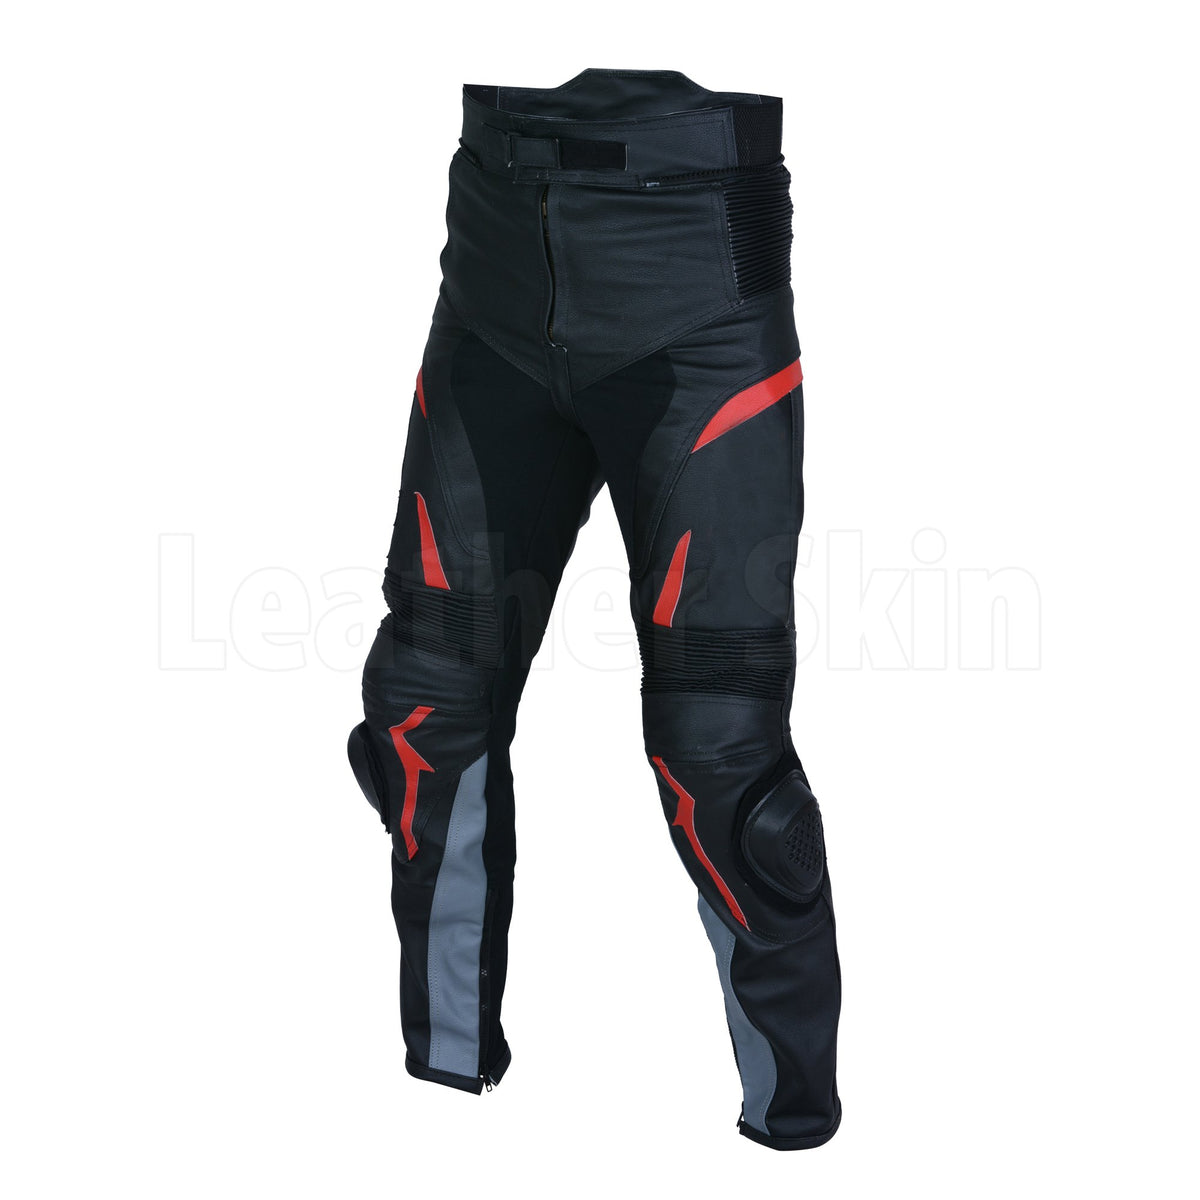 https://leatherskinshop.com/cdn/shop/products/Comfy-Black-Men-Motorcycle-leather-Pants-1_1200x.jpg?v=1634590796